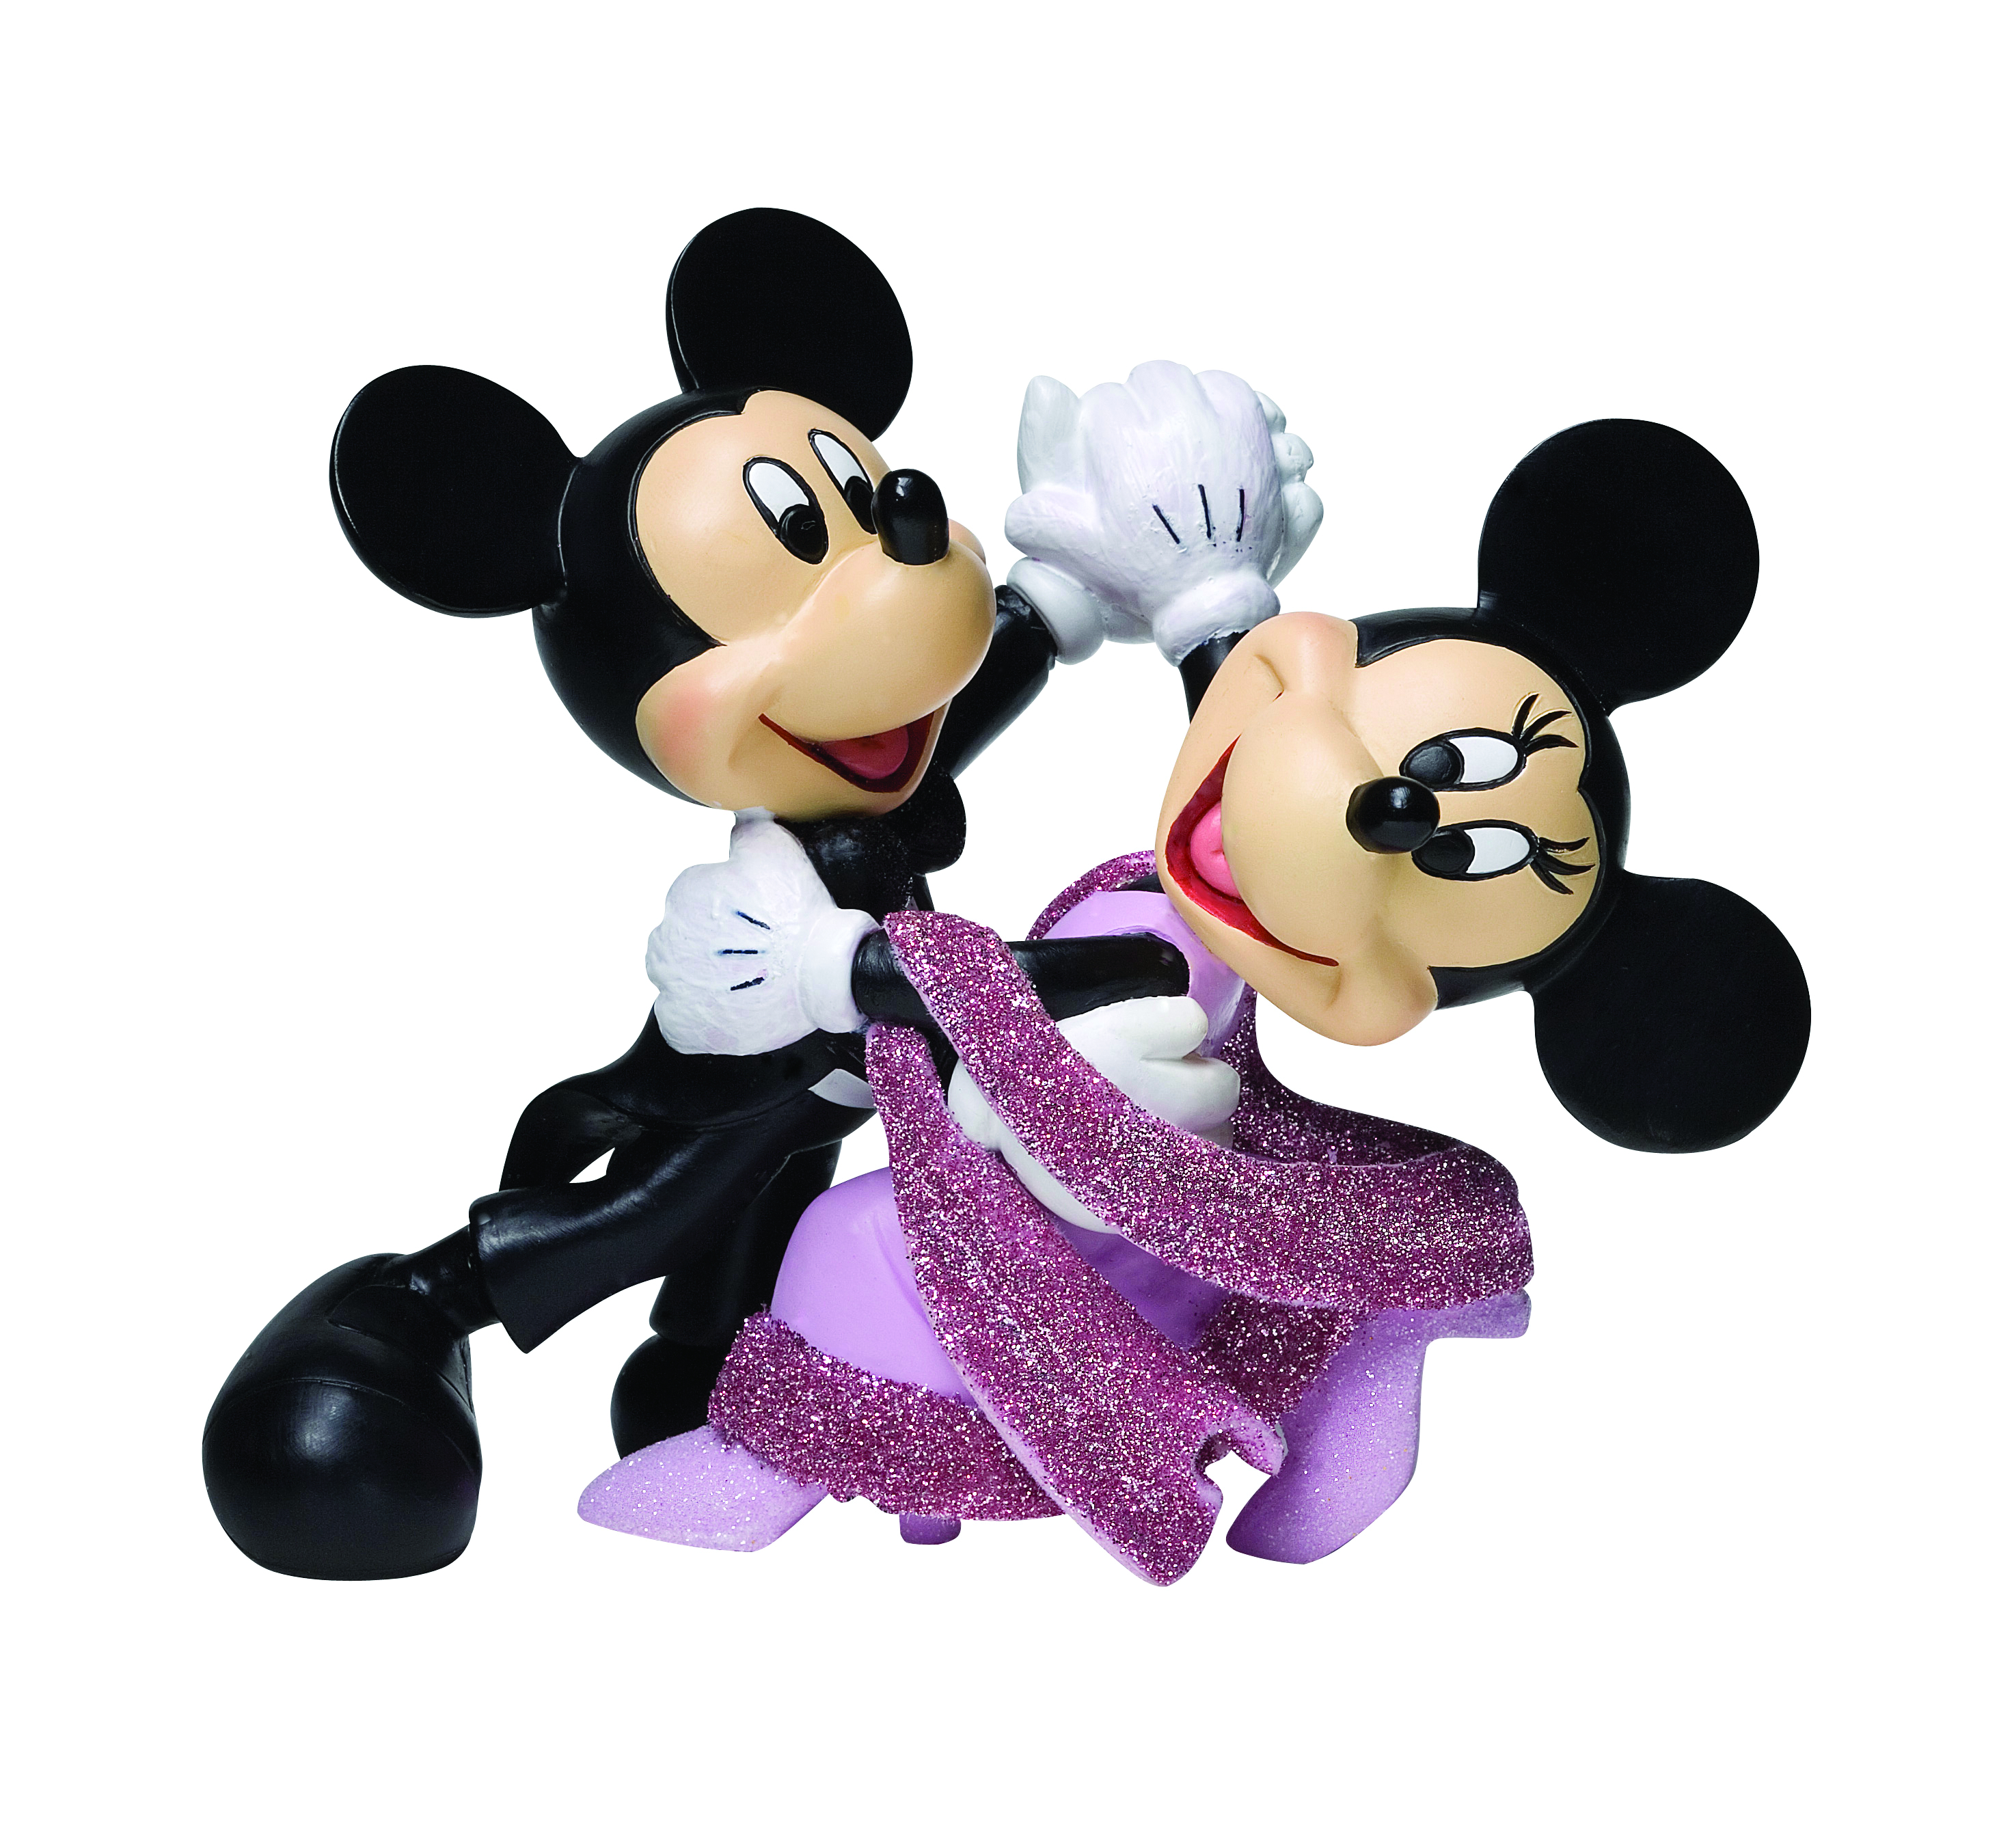 Disney Mickey & Minnie Wedding Figurine